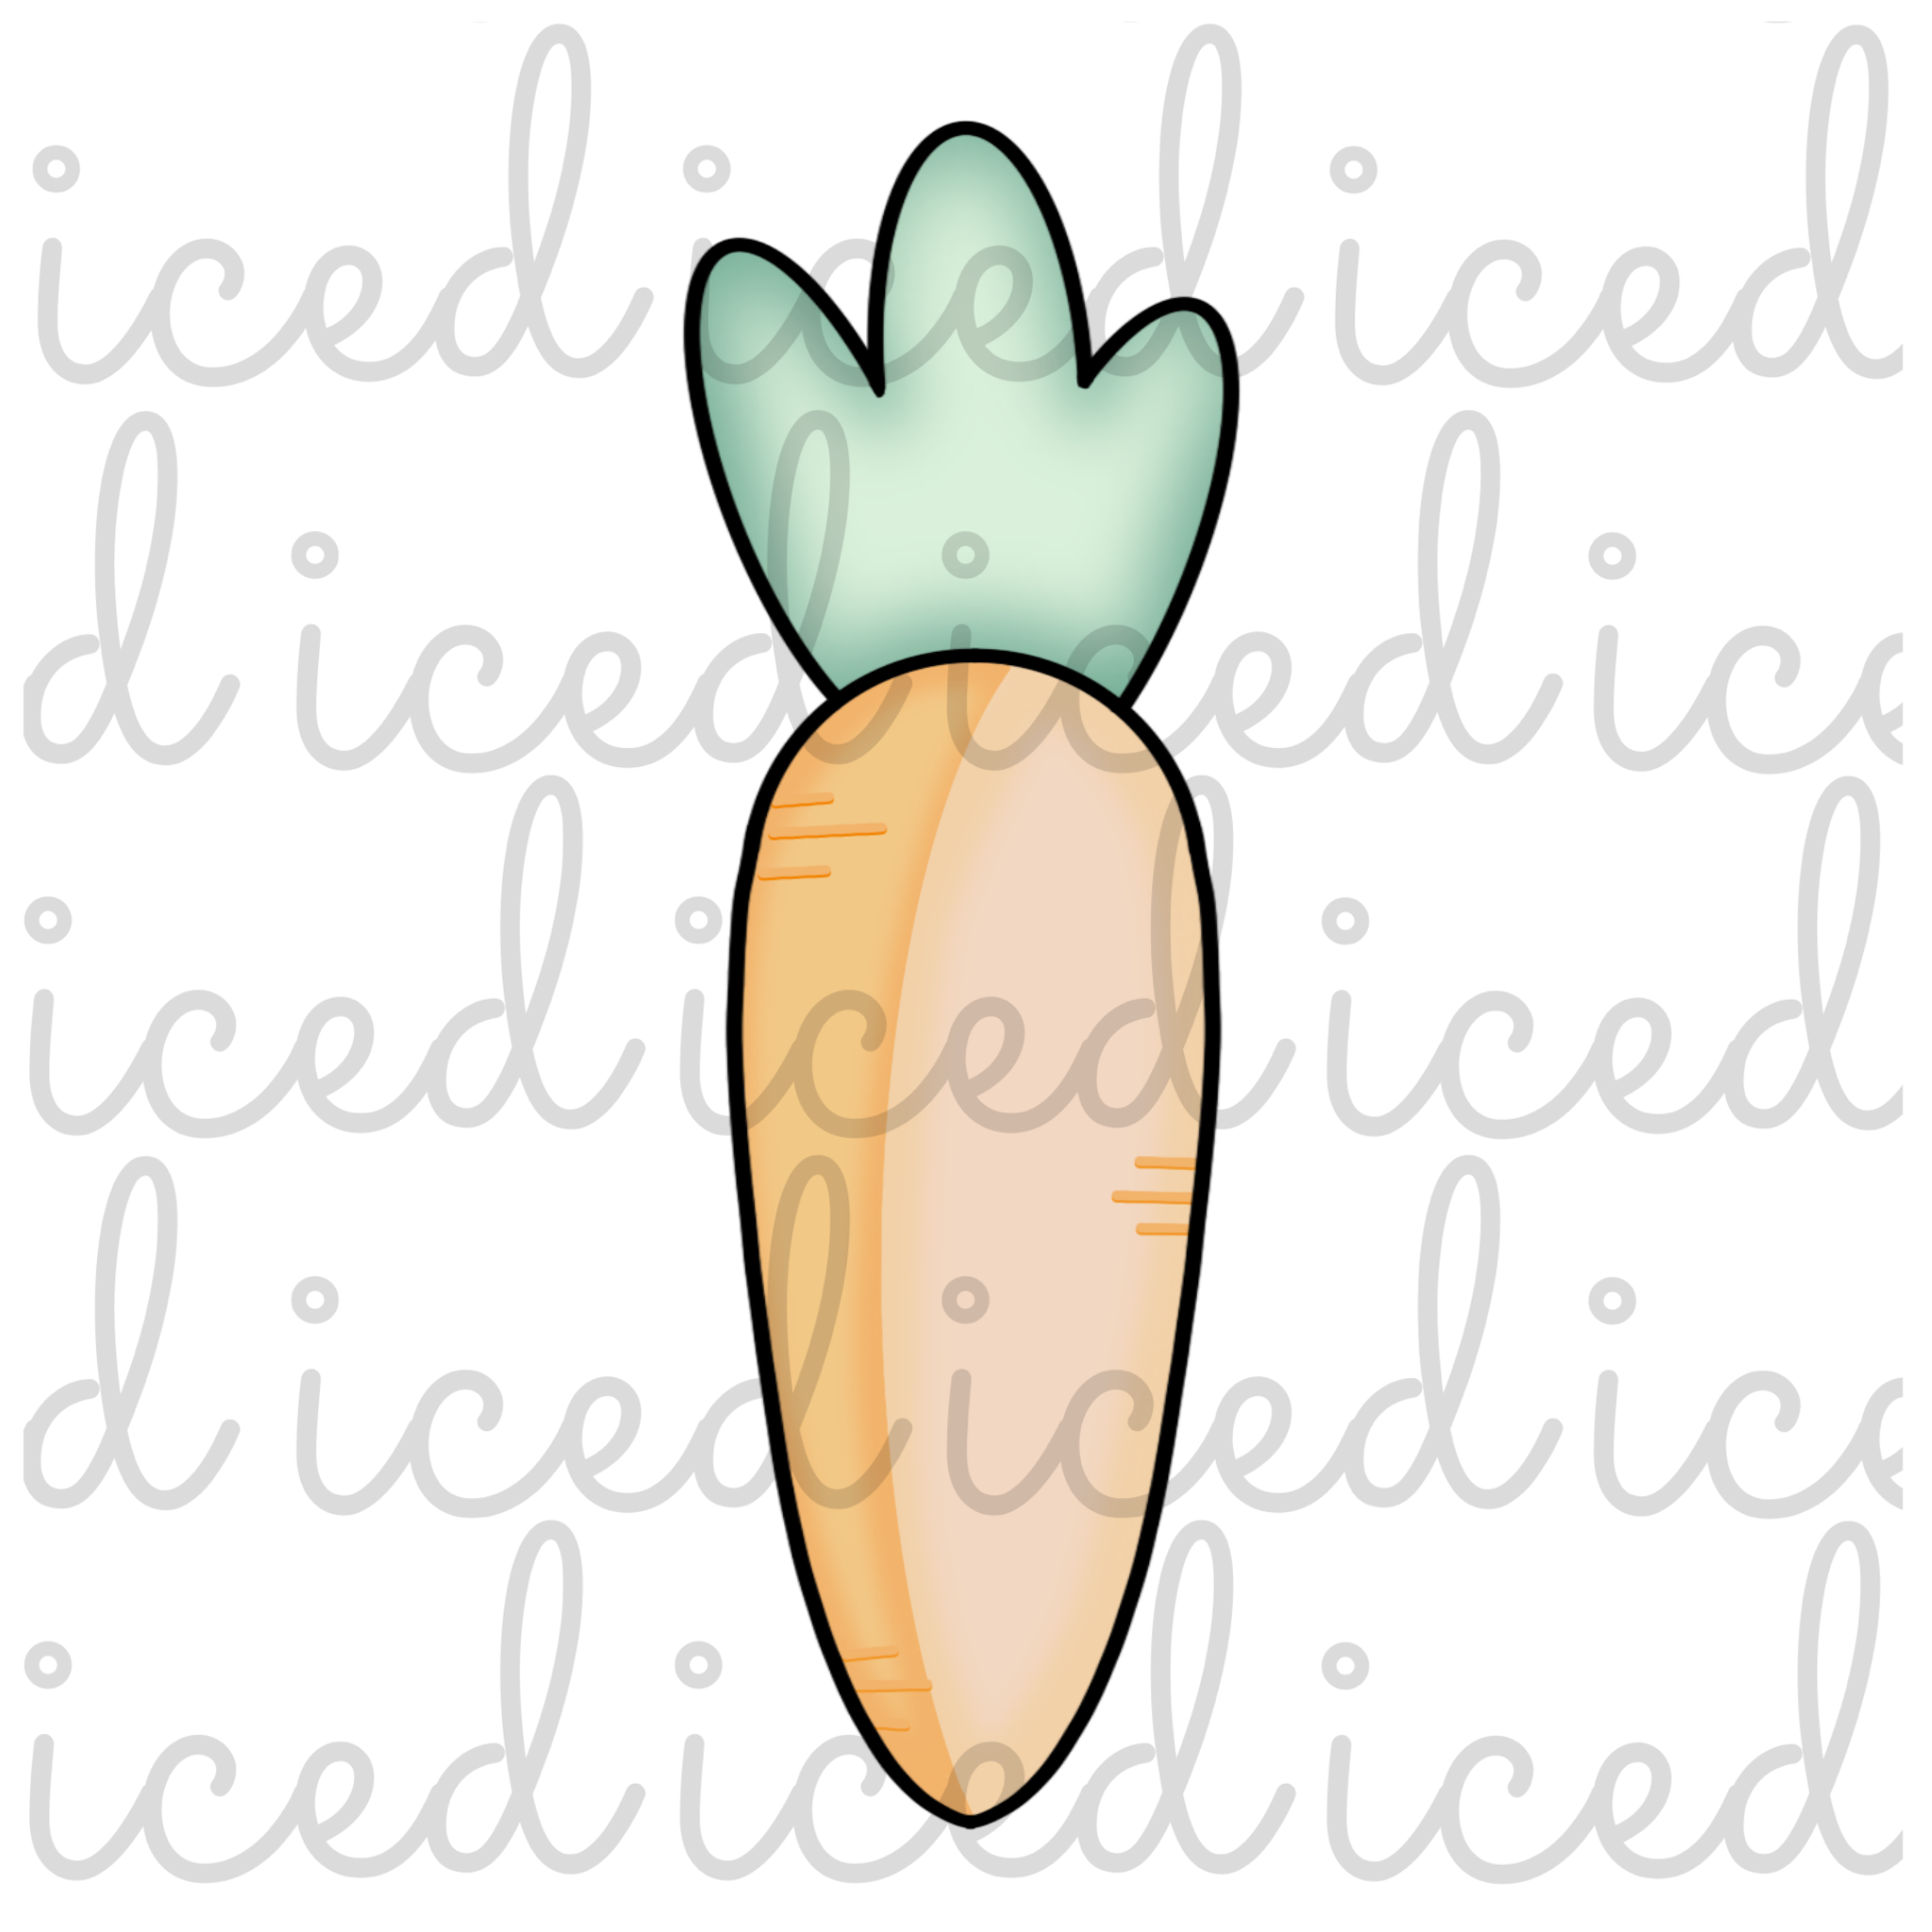 Tall Carrot Cutter